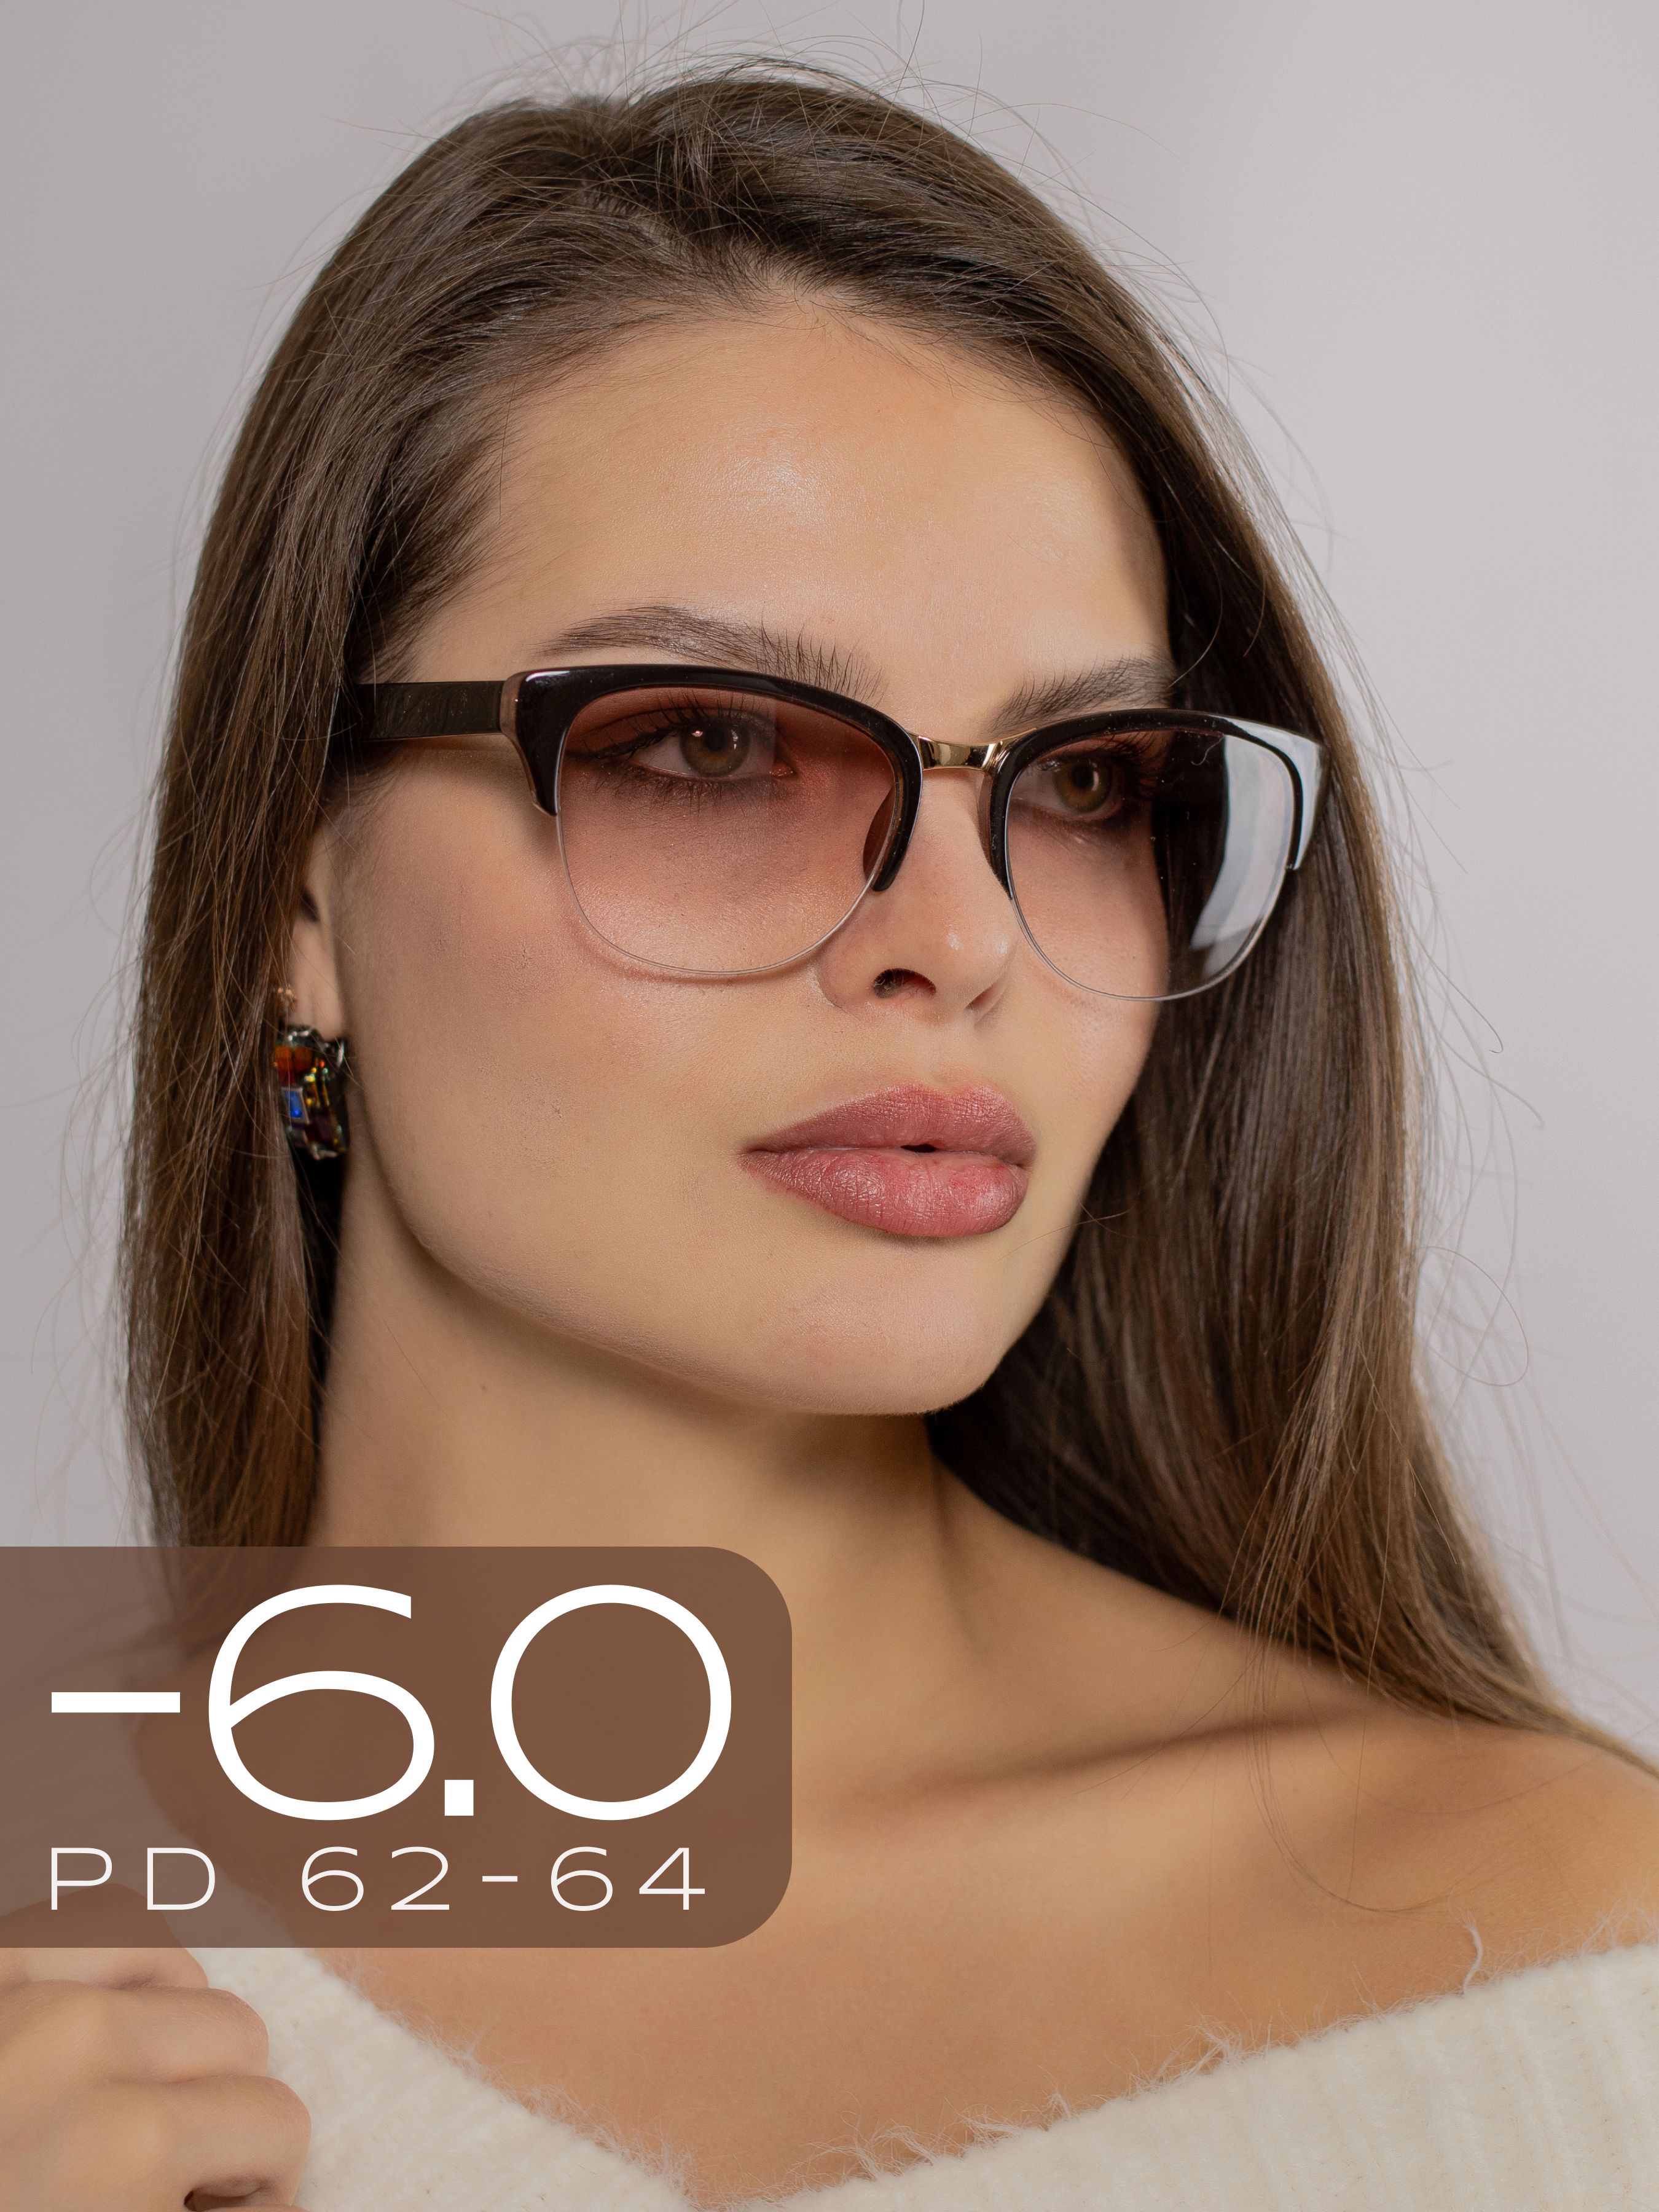 Солнцезащитные очки мужские купить с доставкой по доступной цене в интернет-магазине